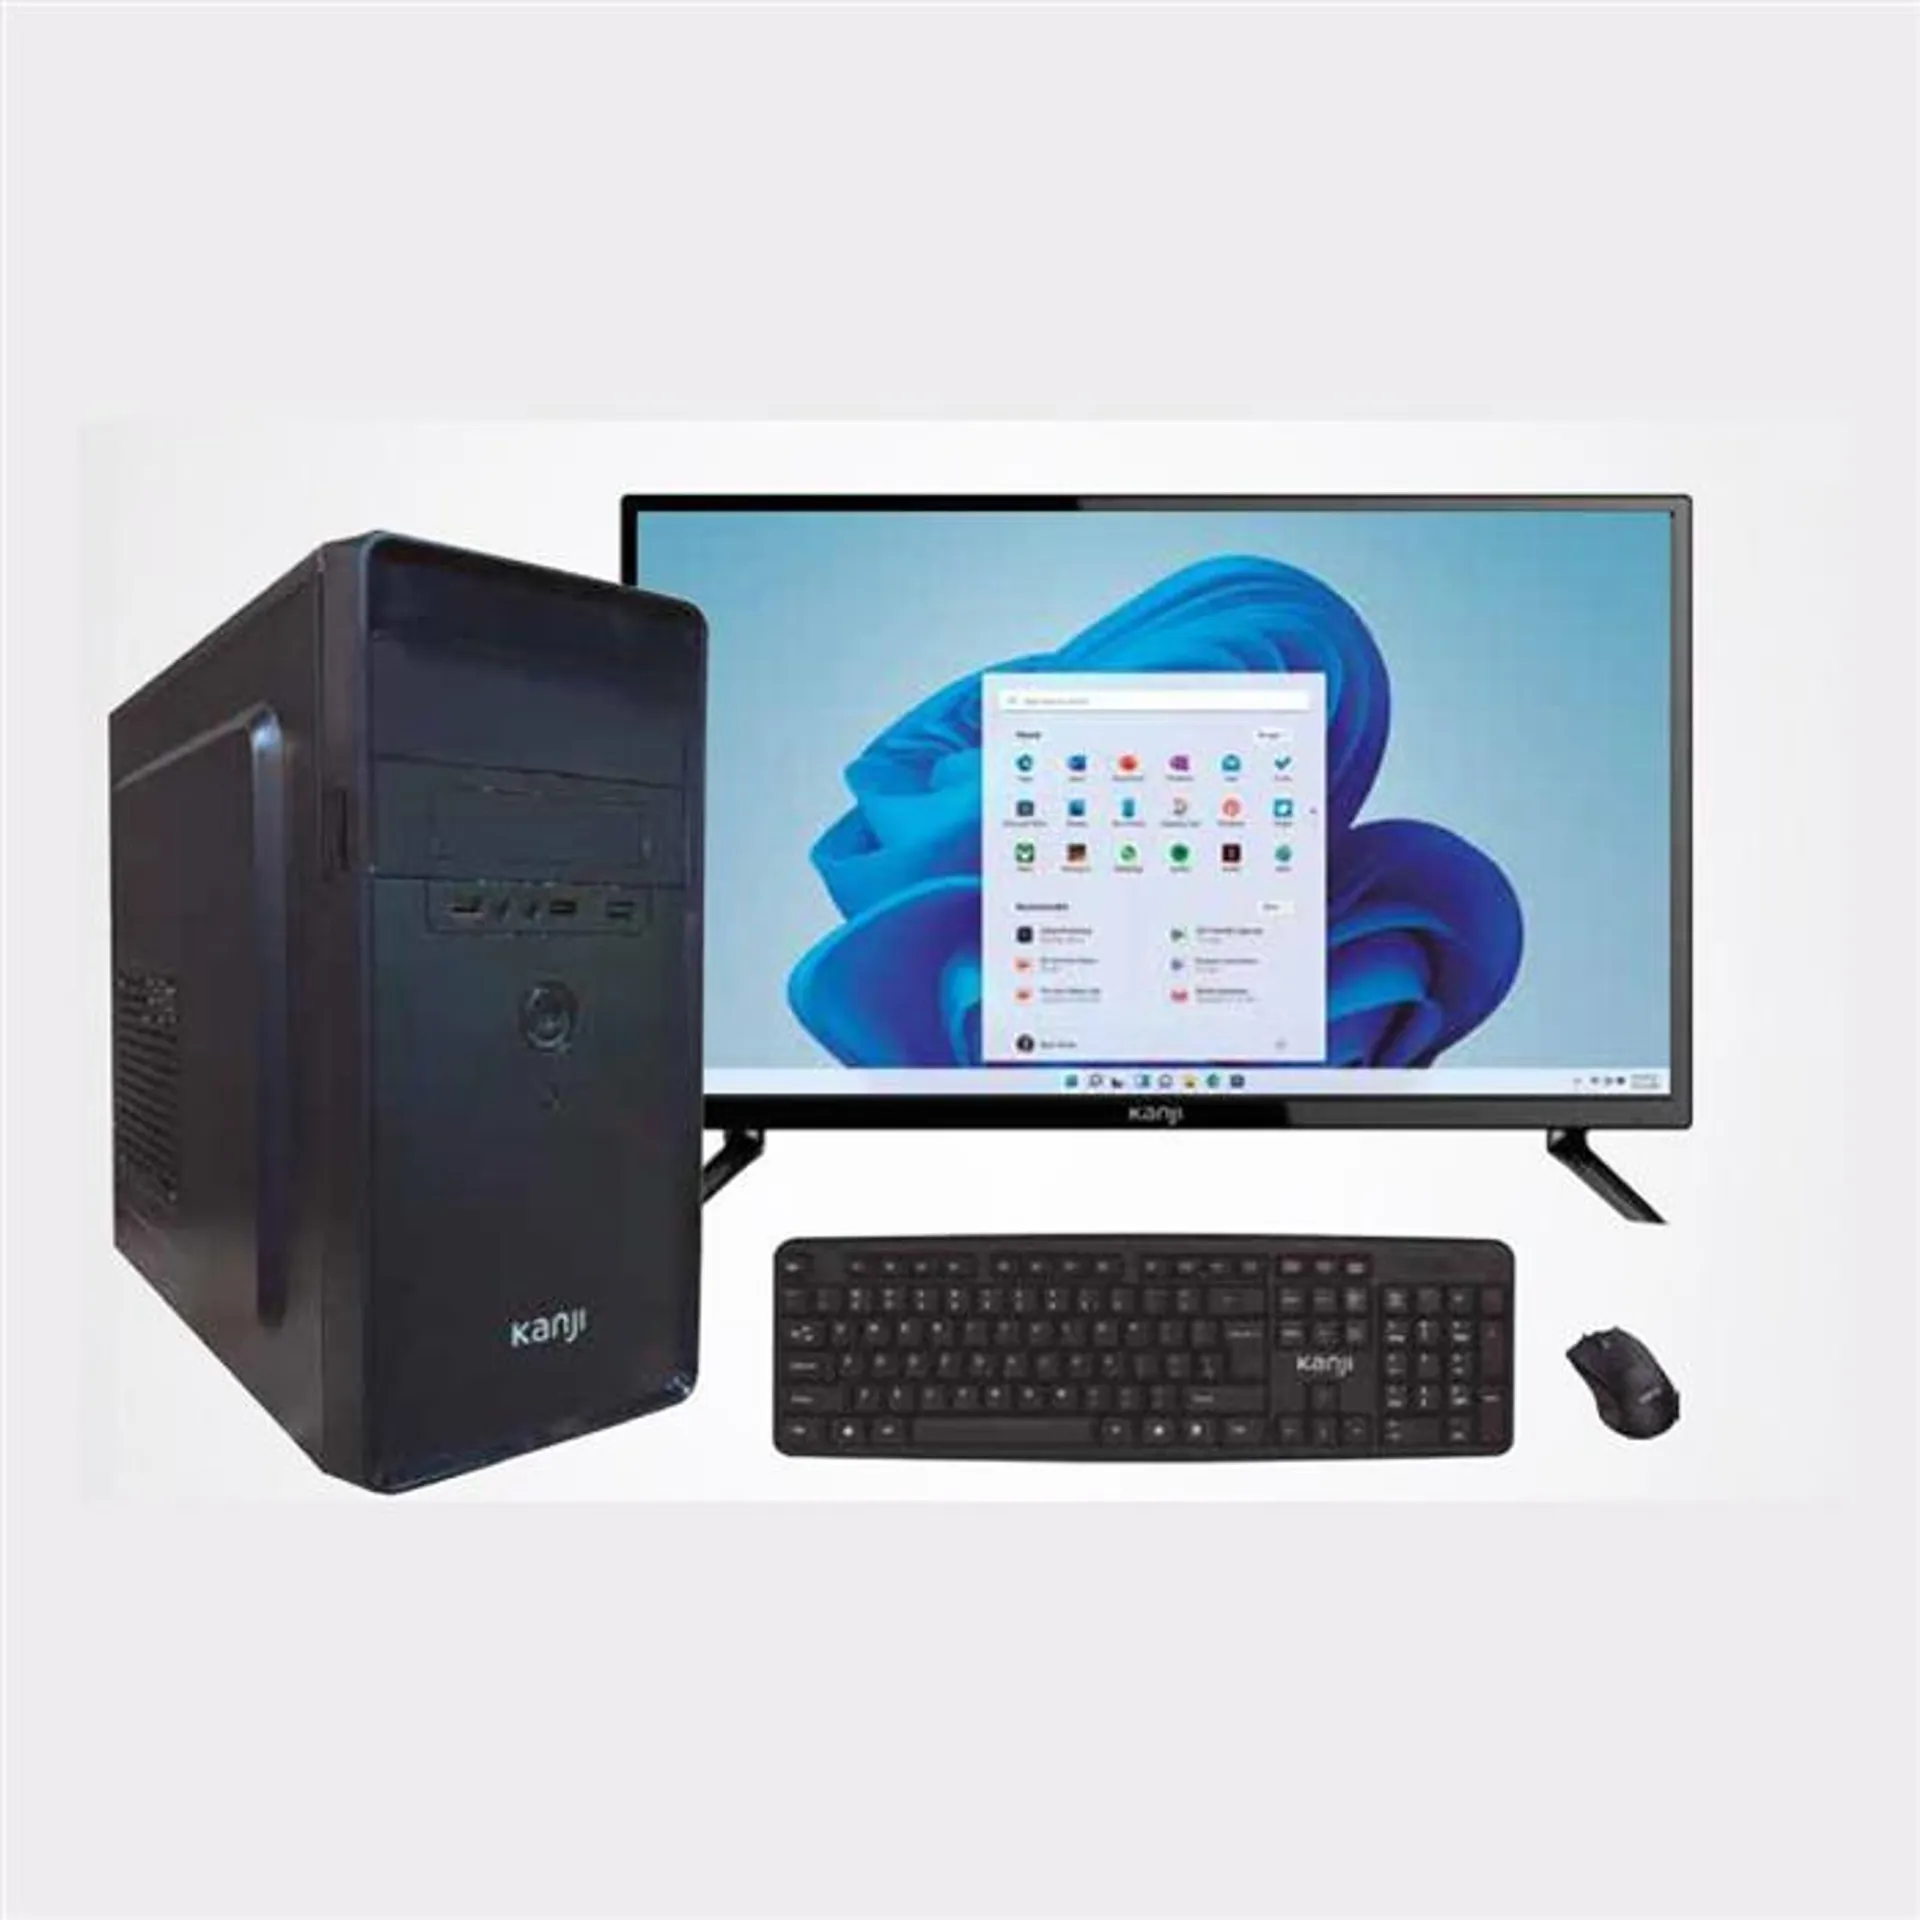 PC ARMADA COMPLETA KANJI i7-10700 8GB SSD 960GB WINDOWS 10 PRO MONITOR TV 24" KJ-24MT005